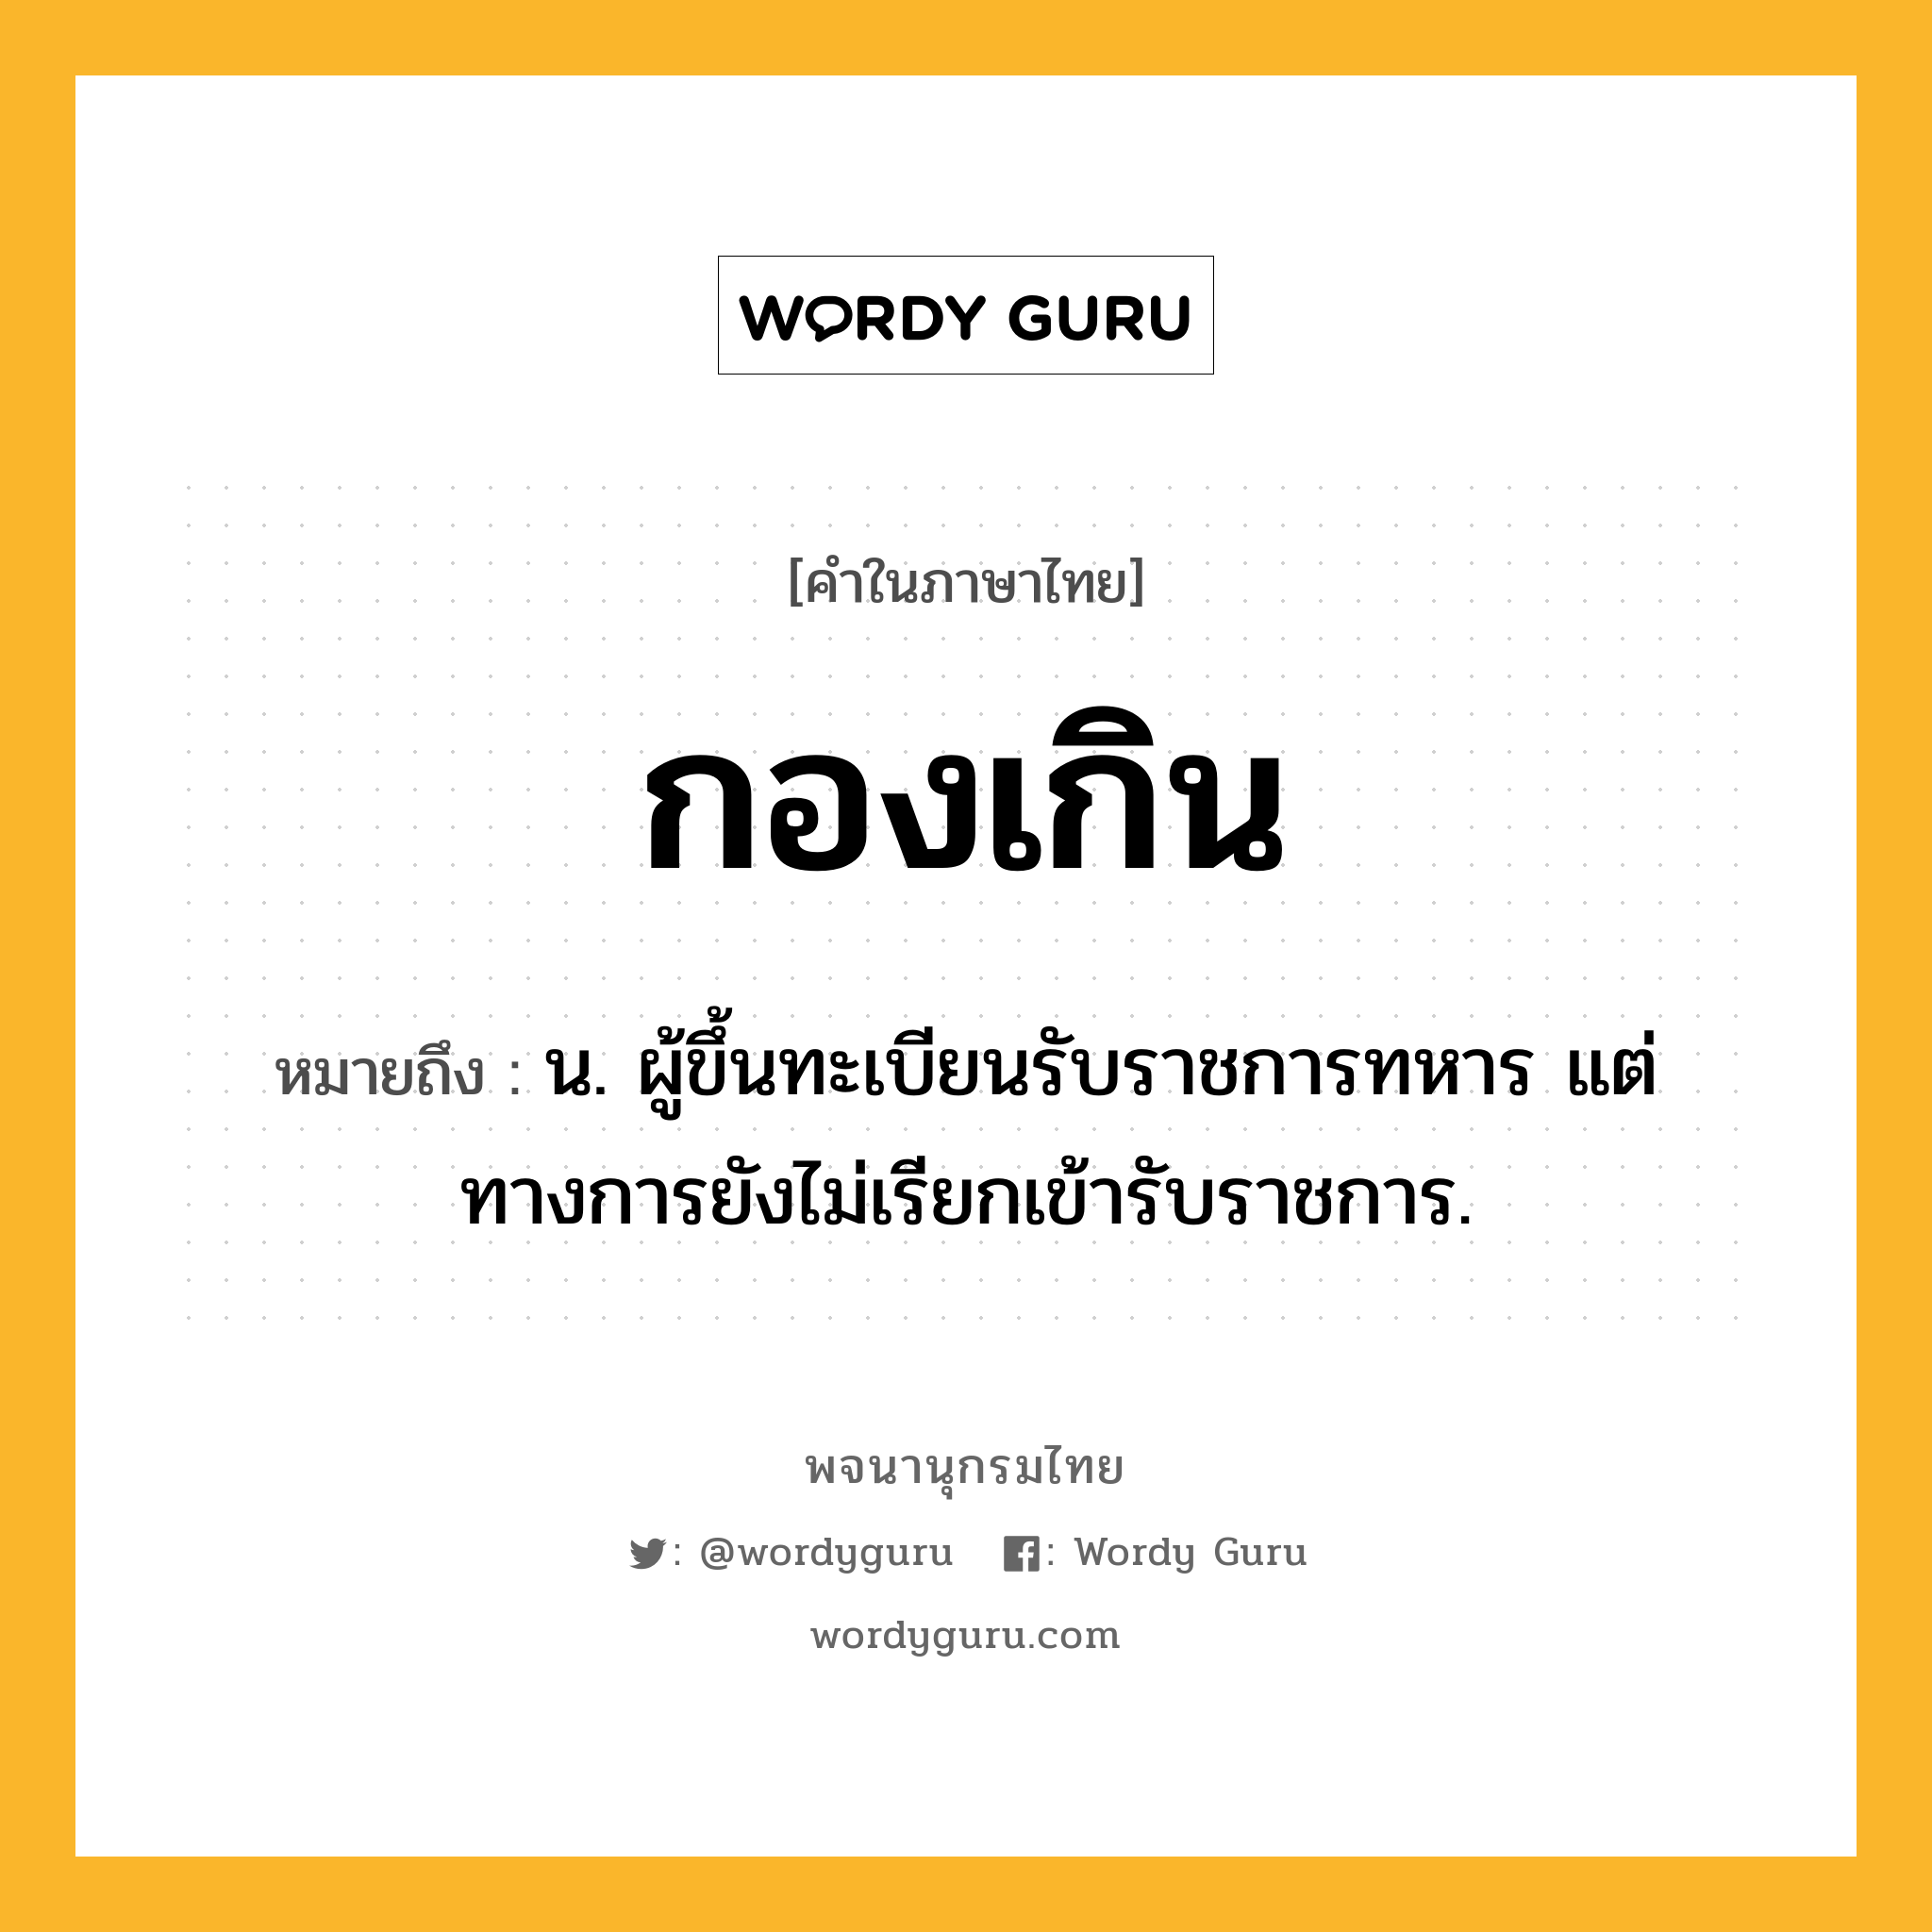 กองเกิน ความหมาย หมายถึงอะไร?, คำในภาษาไทย กองเกิน หมายถึง น. ผู้ขึ้นทะเบียนรับราชการทหาร แต่ทางการยังไม่เรียกเข้ารับราชการ.